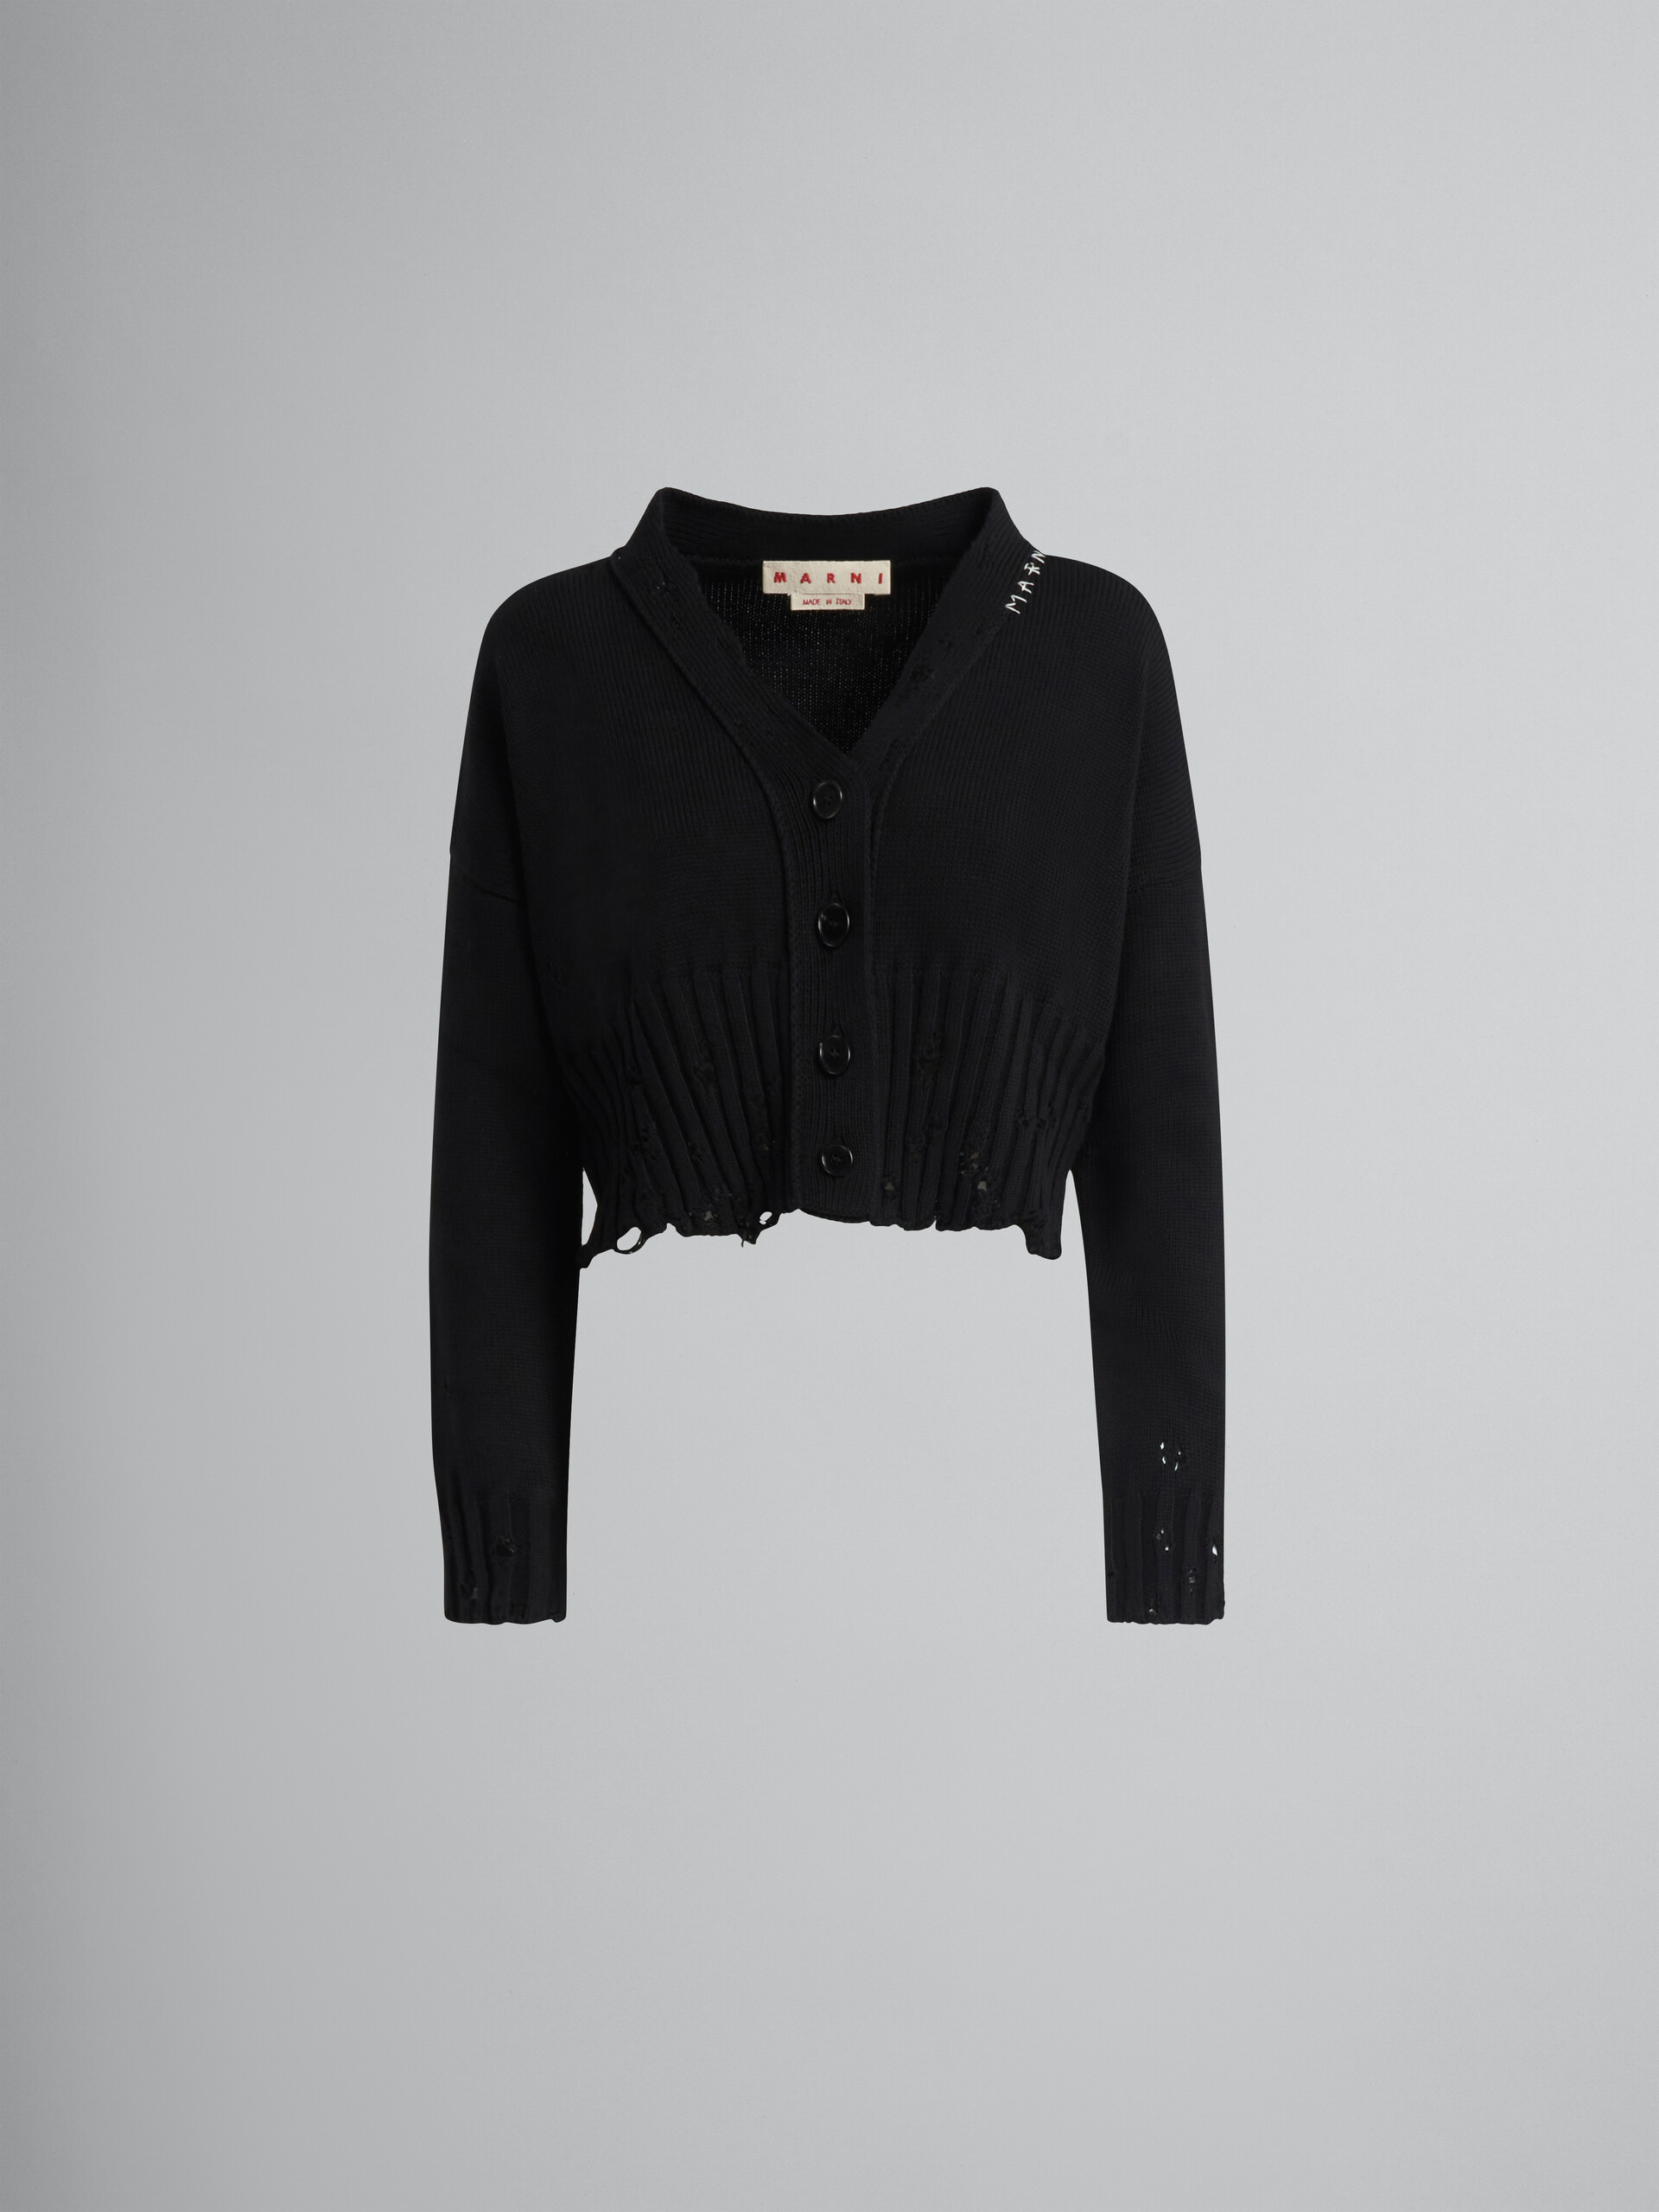 Cárdigan corto de algodón negro - jerseys - Image 1